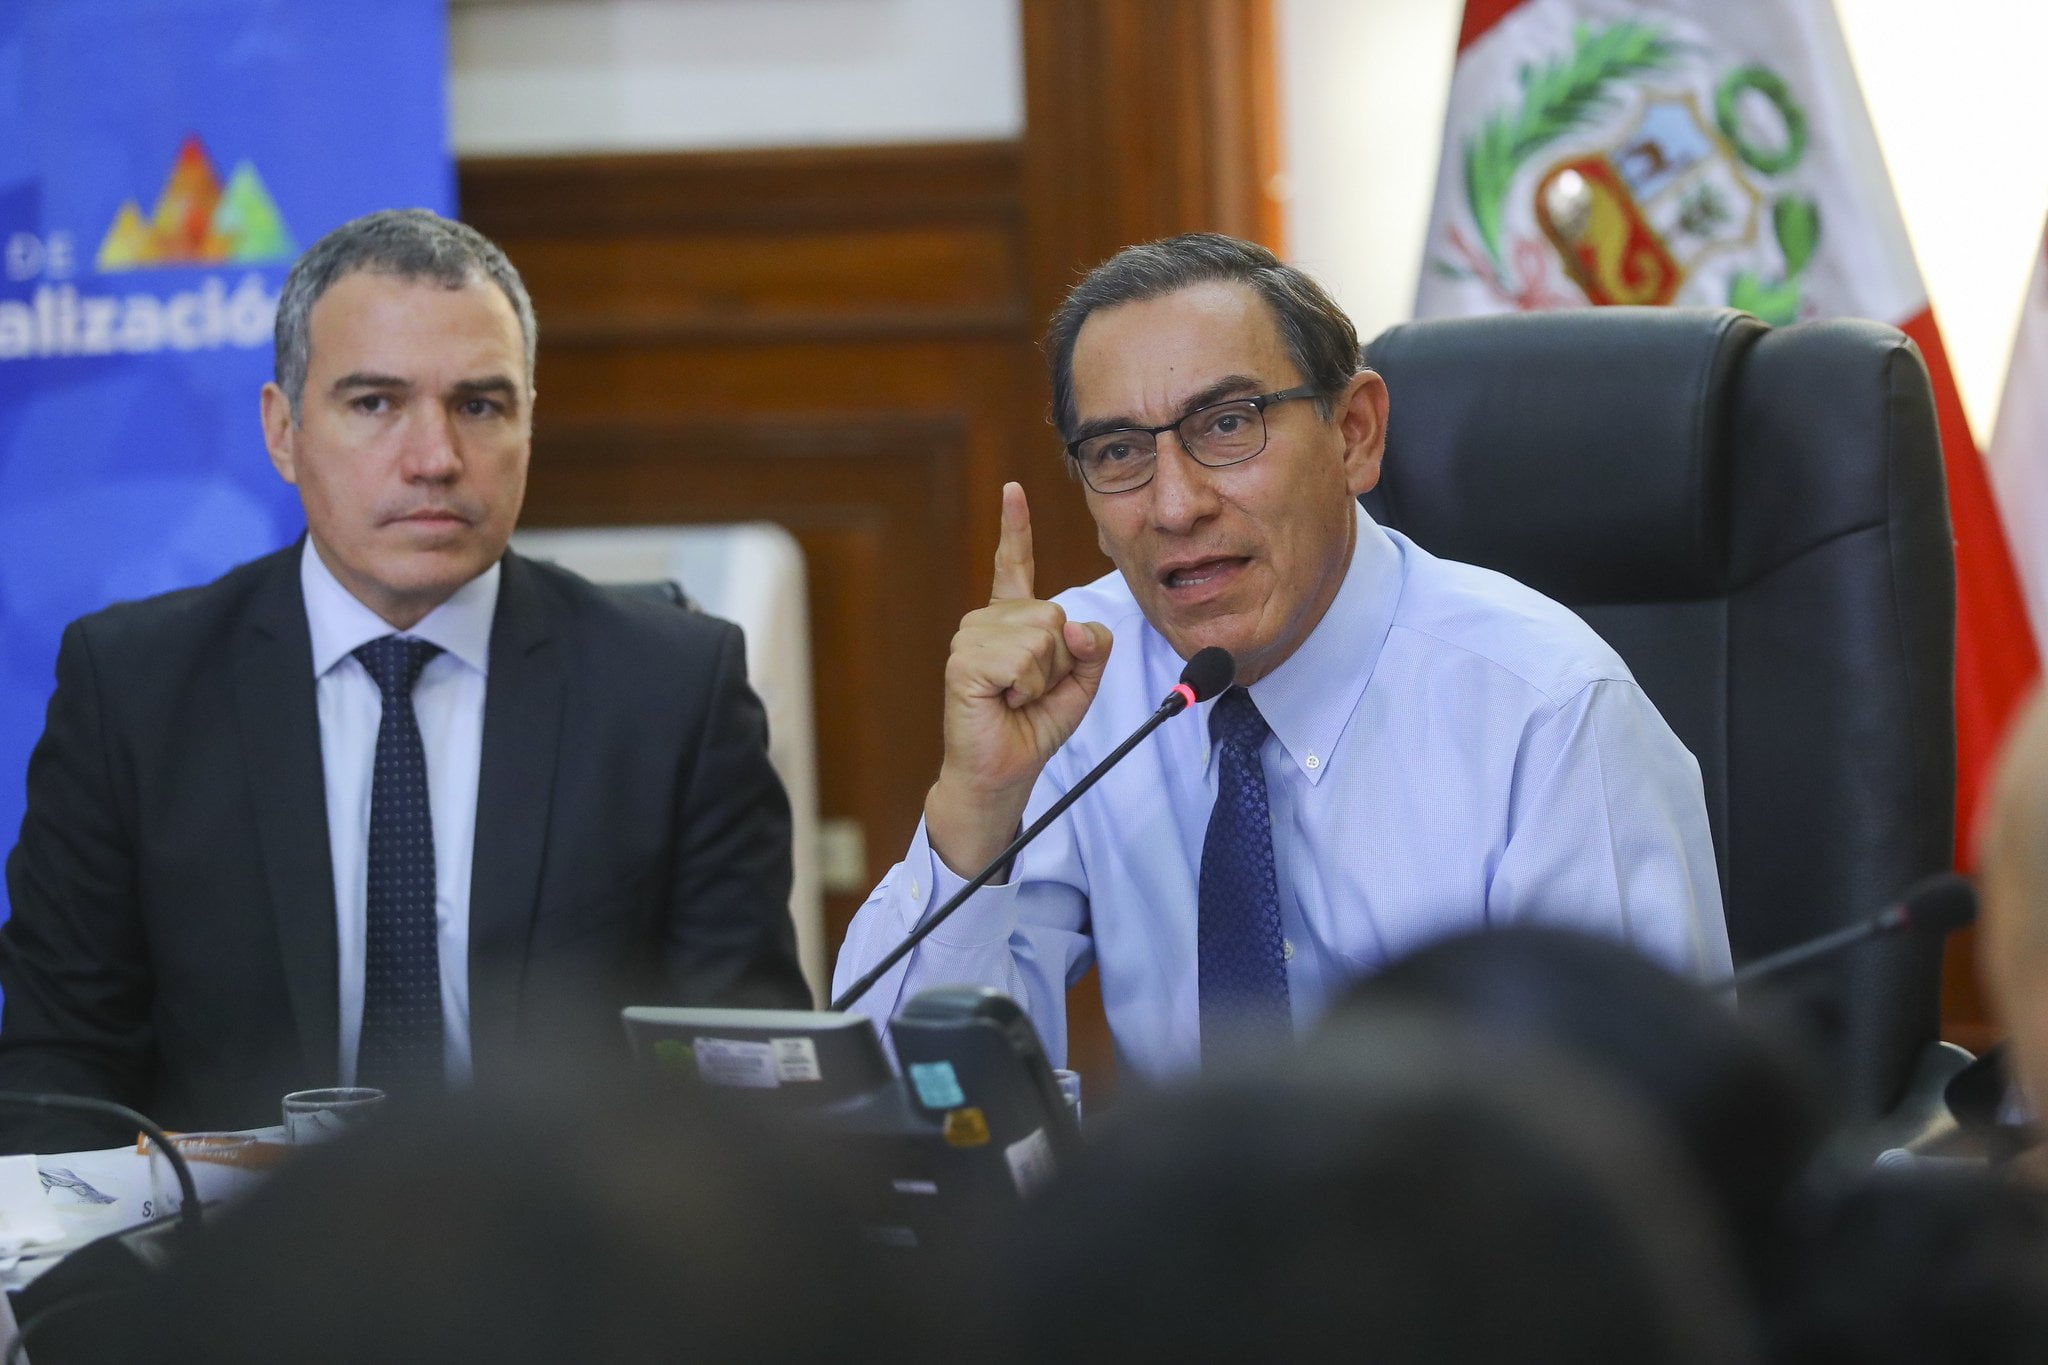 Martín Vizcarra cuestiona al Congreso por no aprobar leyes de reforma judicial